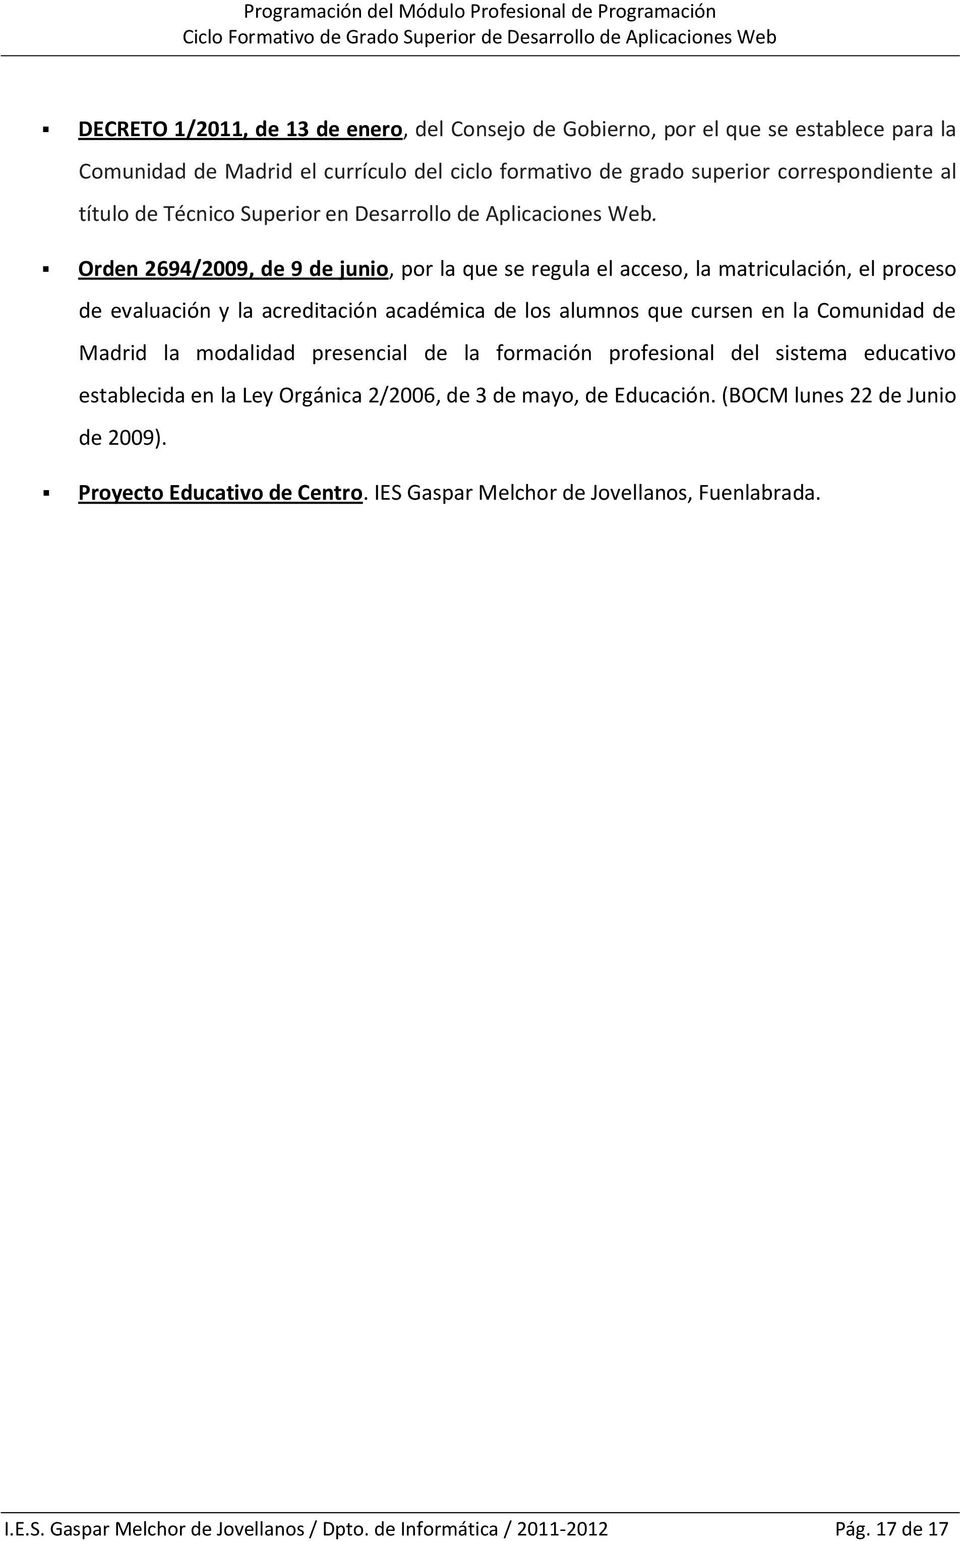 Orden 2694/2009, de 9 de junio, por la que se regula el acceso, la matriculación, el proceso de evaluación y la acreditación académica de los alumnos que cursen en la Comunidad de Madrid la